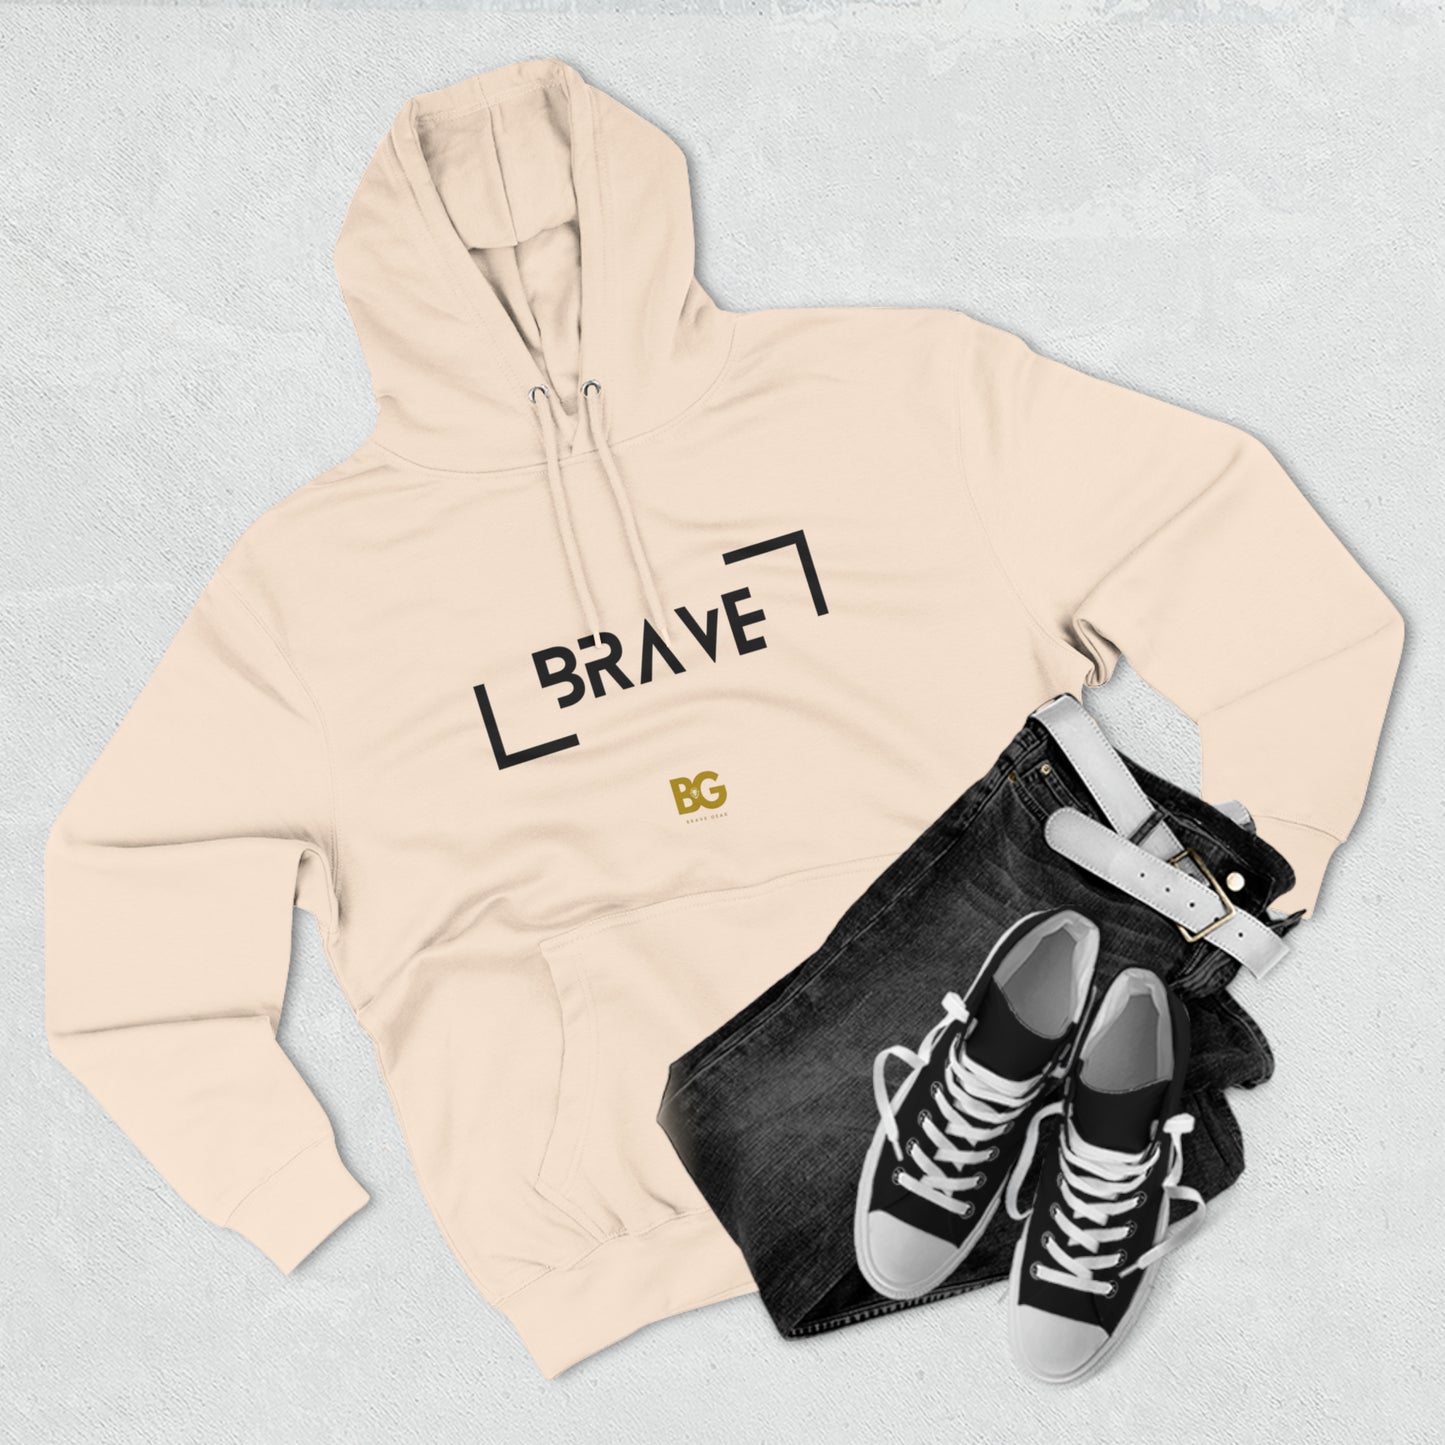 BG "Brave" Premium Pullover Hoodie